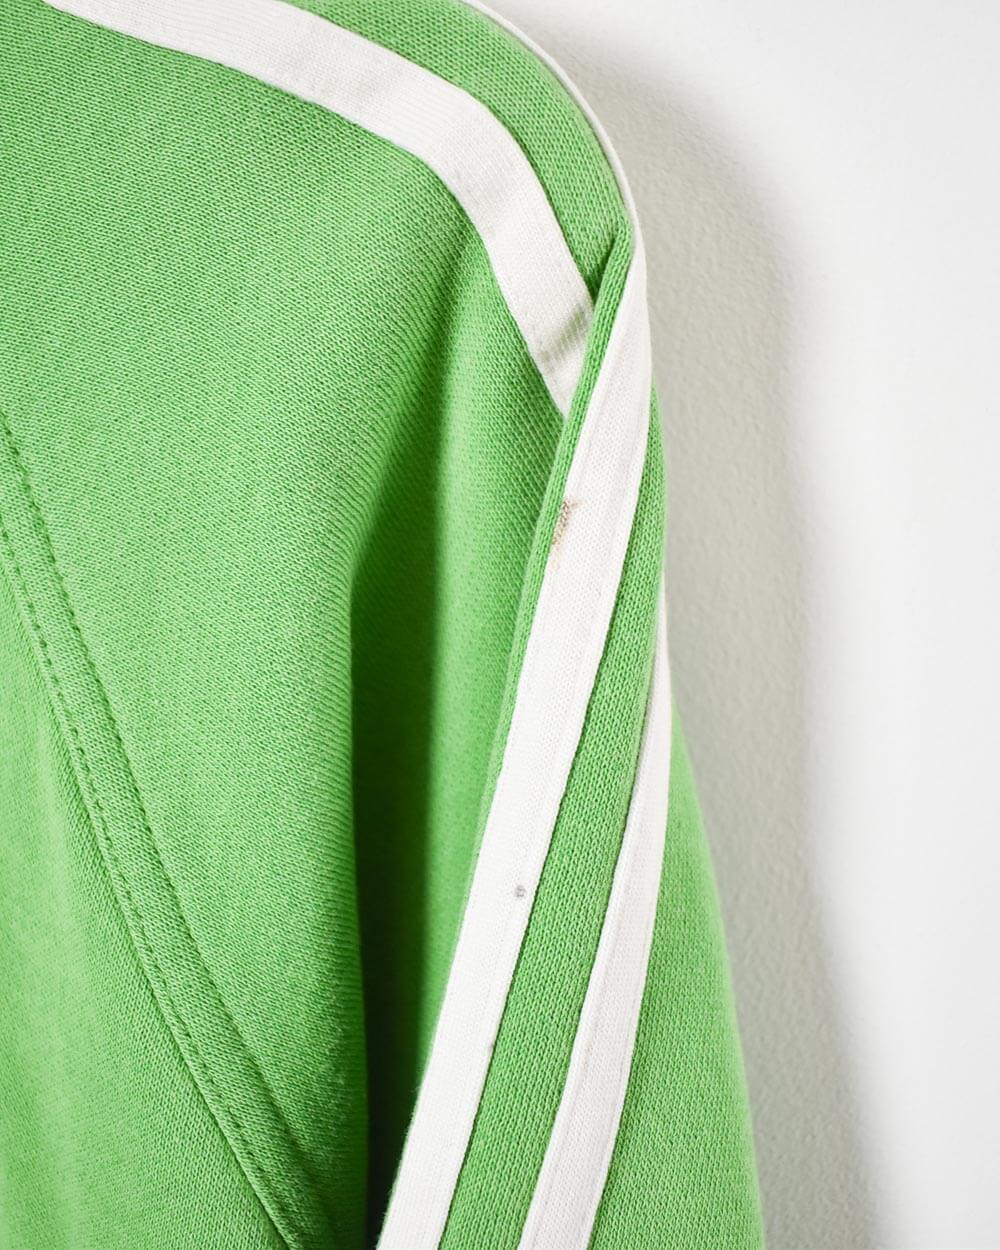 Green Adidas 1/4 Zip Hoodie - Medium